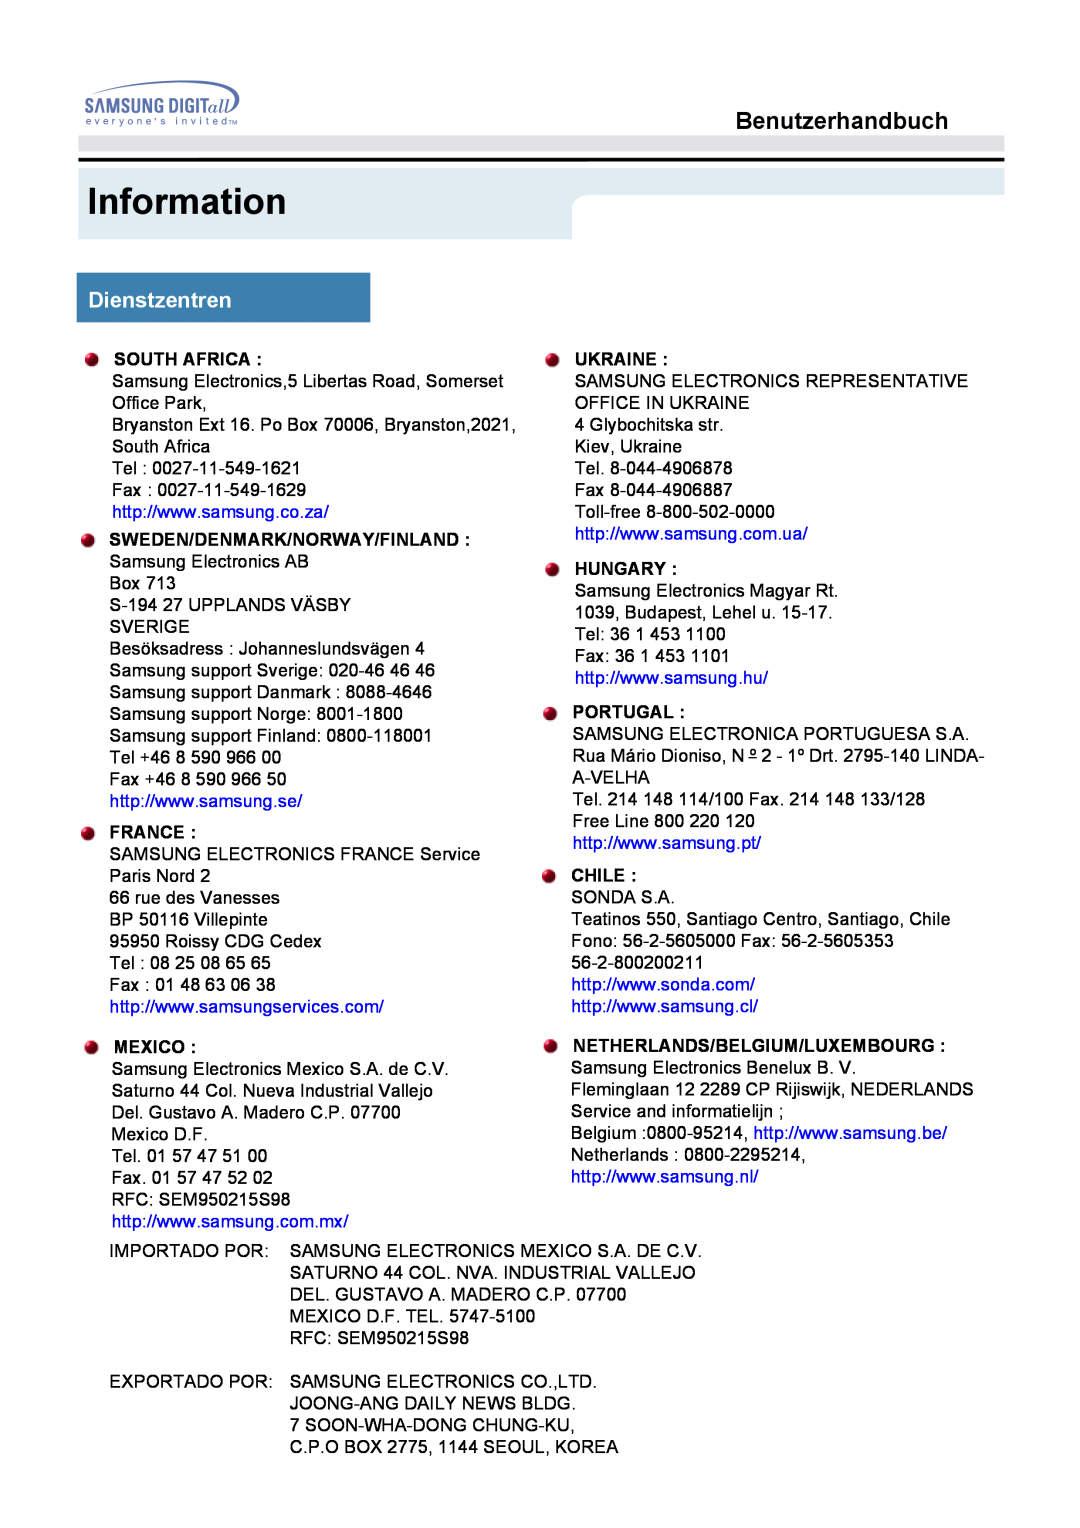 Samsung MO17ESZSZ/EDC Information, Benutzerhandbuch, Dienstzentren, South Africa, Sweden/Denmark/Norway/Finland, France 